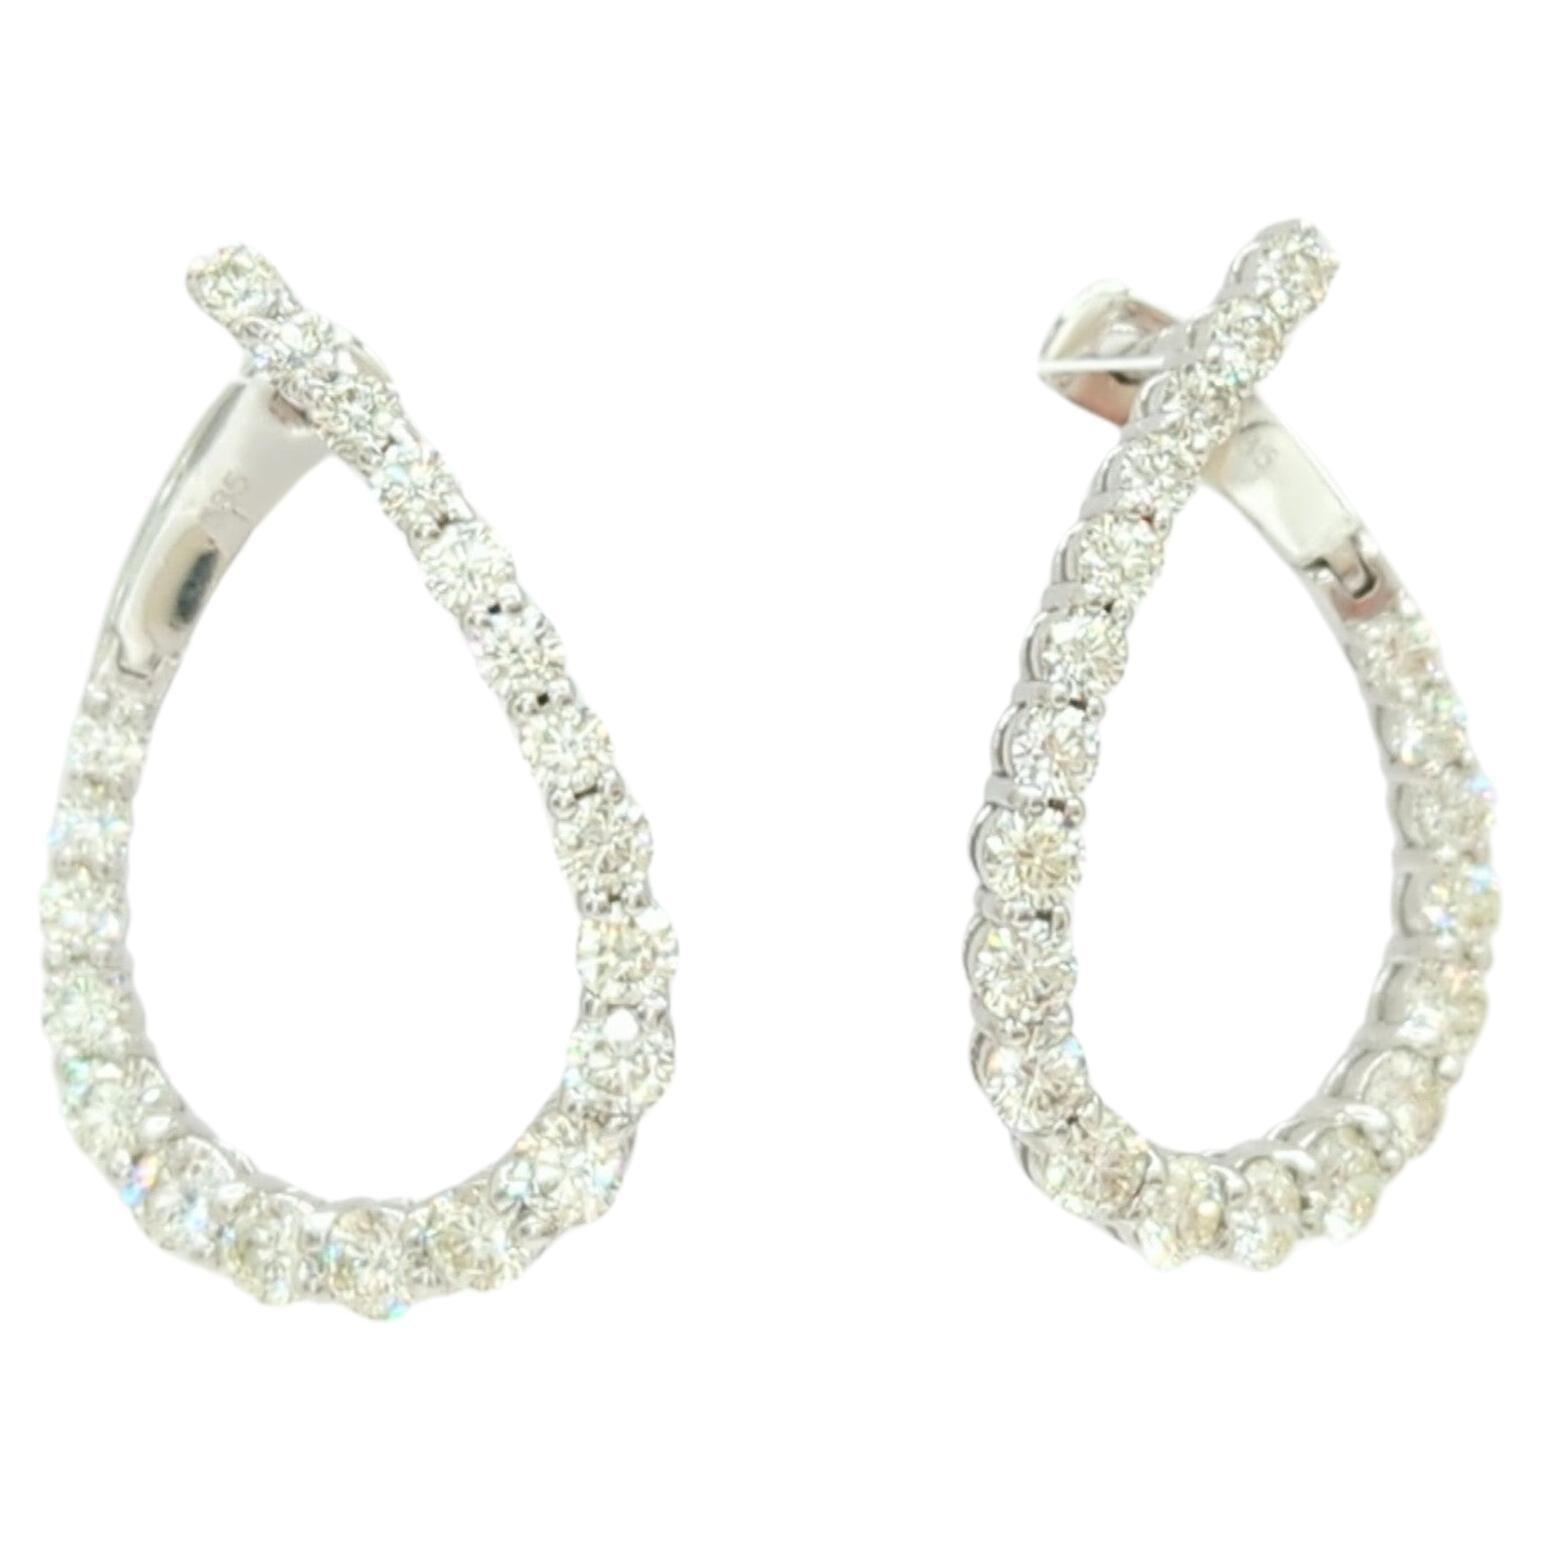 White Diamond Round Tear Drop Hoop Earrings in 14K White Gold